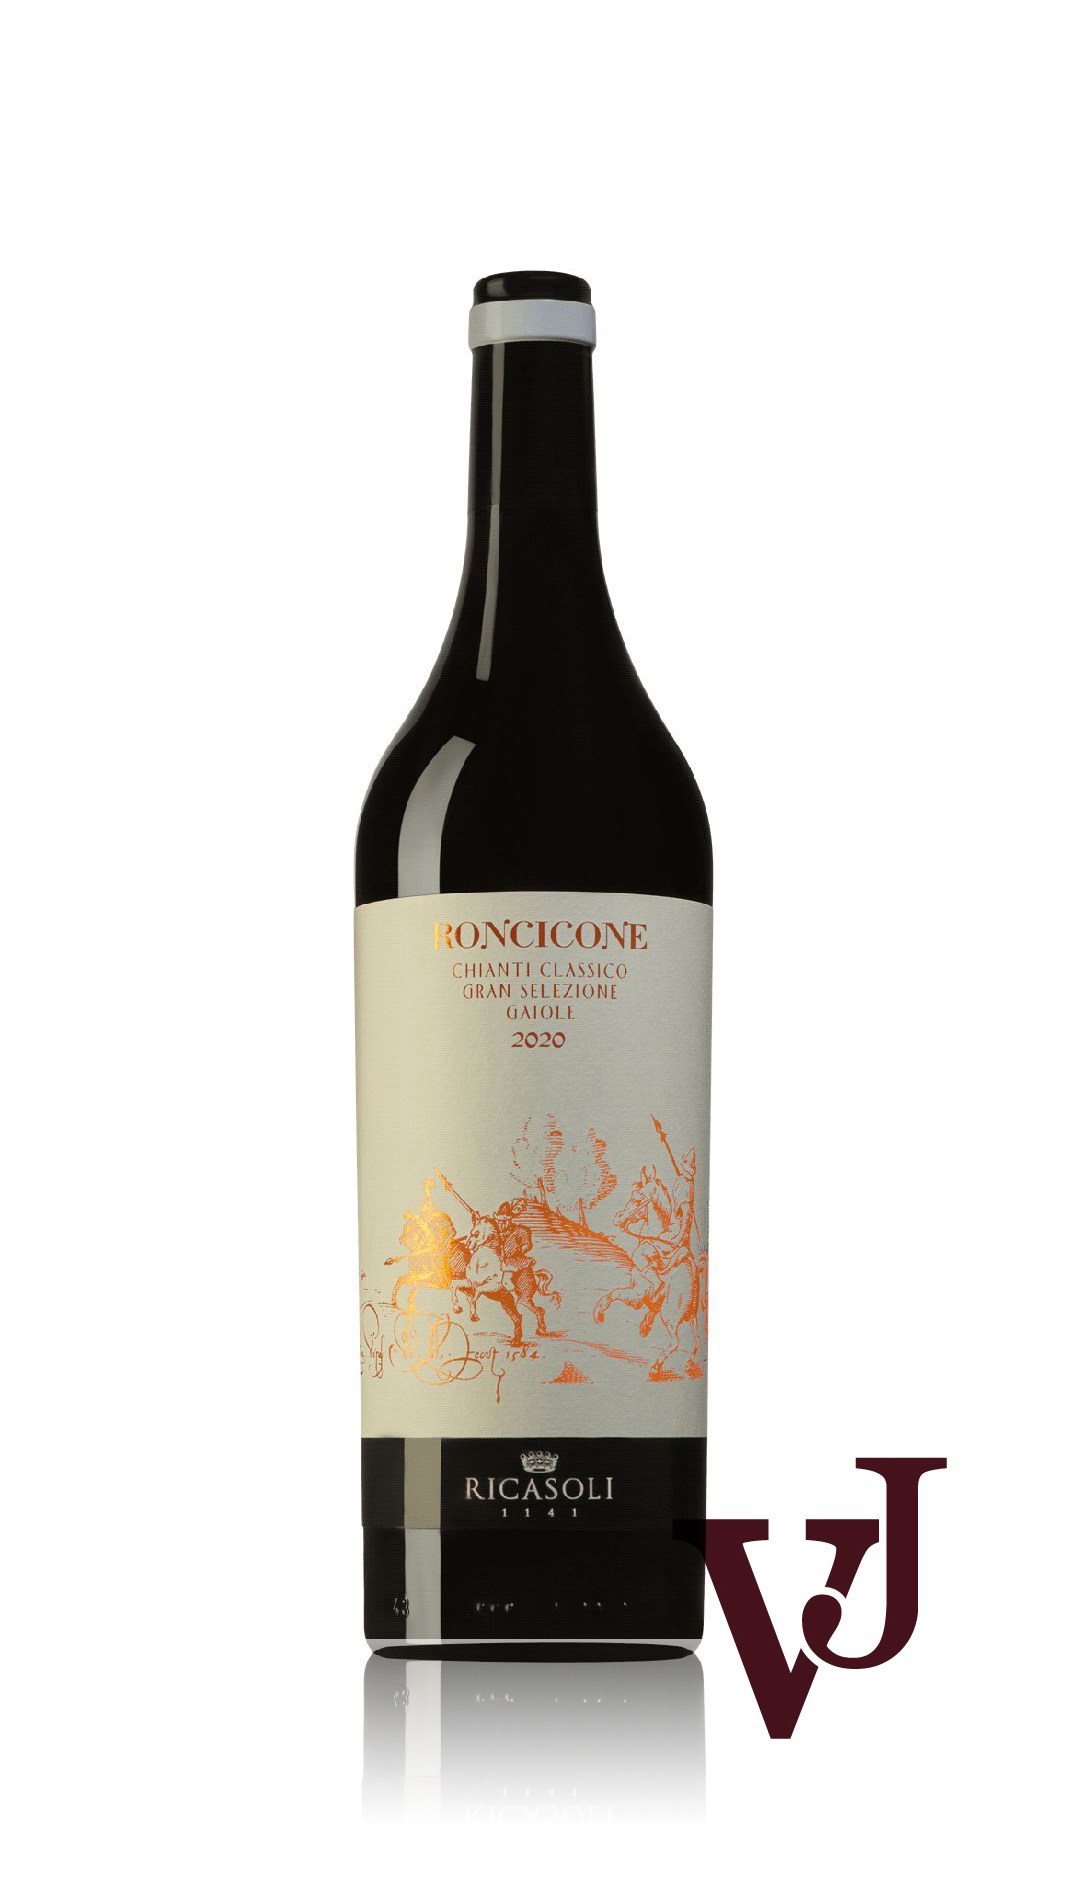 Vitt Vin - Roncicone Ricasoli 2020 artikel nummer 9403701 från producenten Barone Ricasoli SPA från området Italien